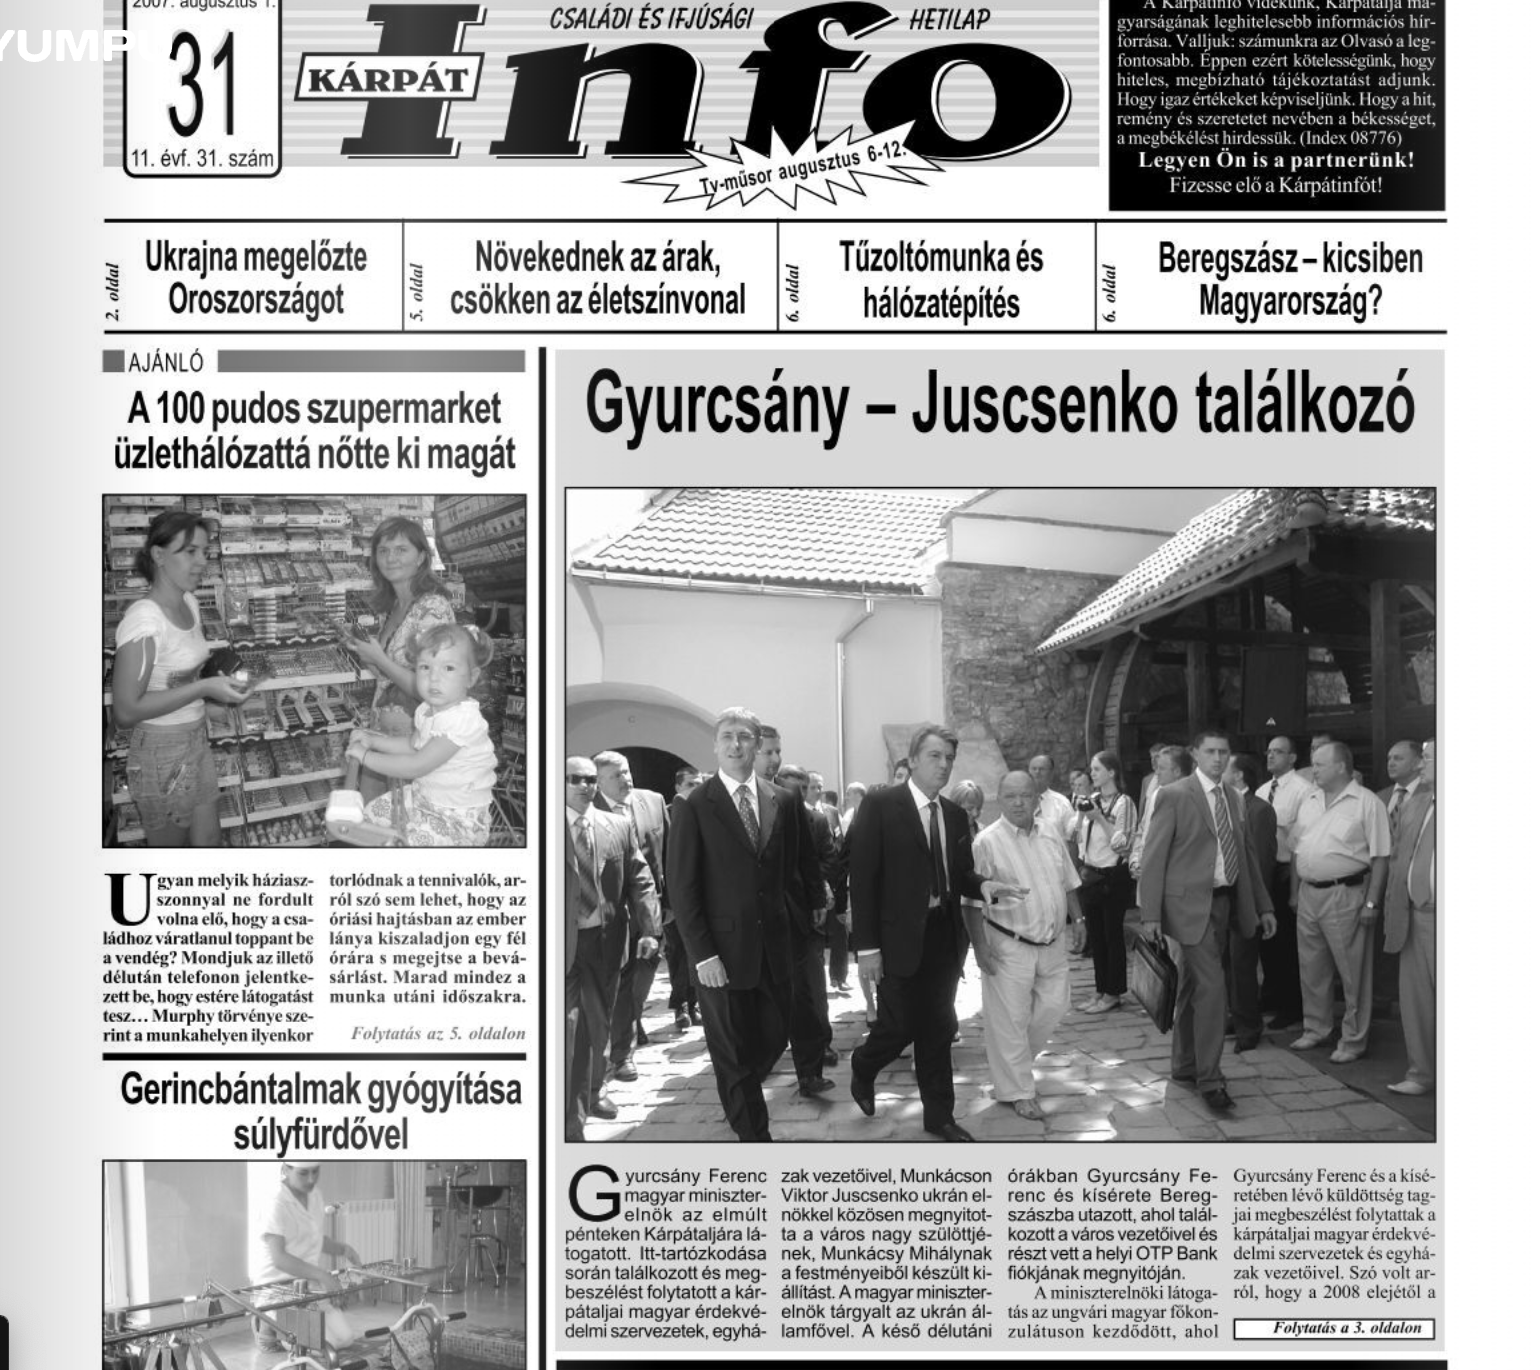 Az ukrajnai Kárpát Info 2007. Augusztus 1-i címlapján vezető anyagban számolnak be gyurcsány Ferenc magyar miniszterelnök és Viktor Juscsenko ukrán elnök munkácsi találkozójáról. 